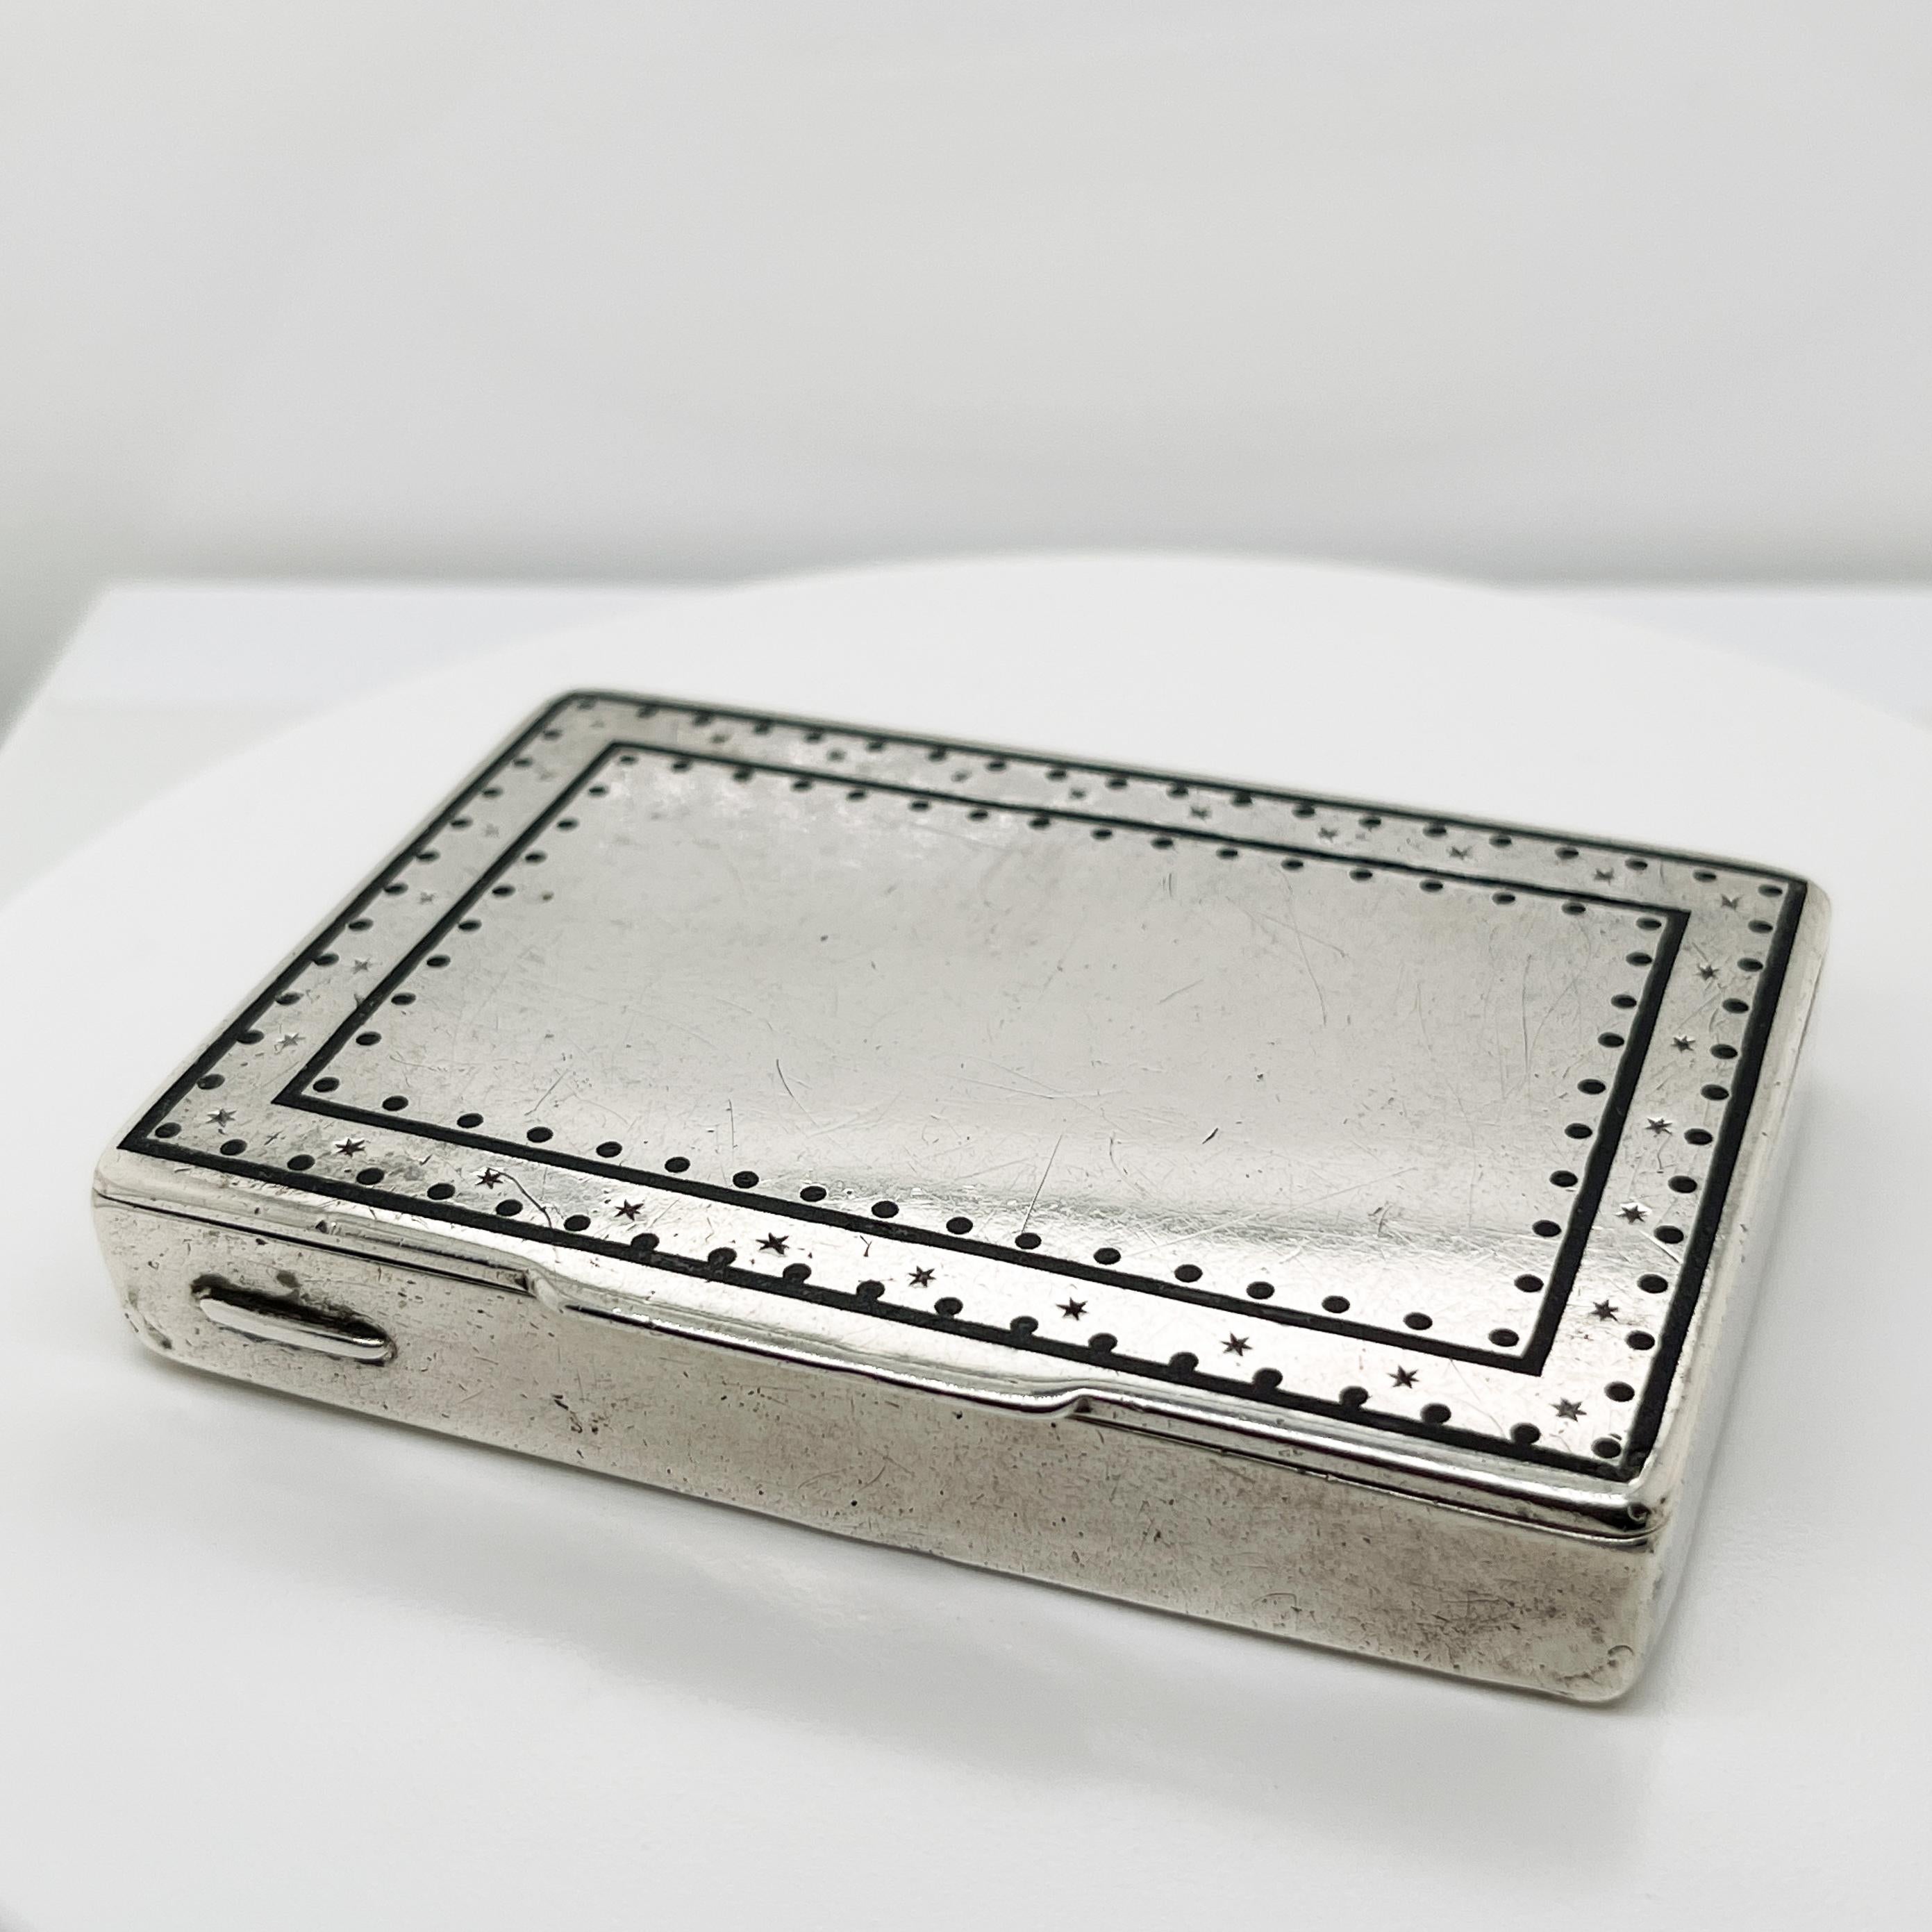 Eine schöne Weiner Werkstatte Box oder Etui. 

Aus 900/1000er Silber mit gepunzten Sternen und schwarzem Emaille-Dekor auf dem Deckel.

Auf der Innenseite gestempelt 